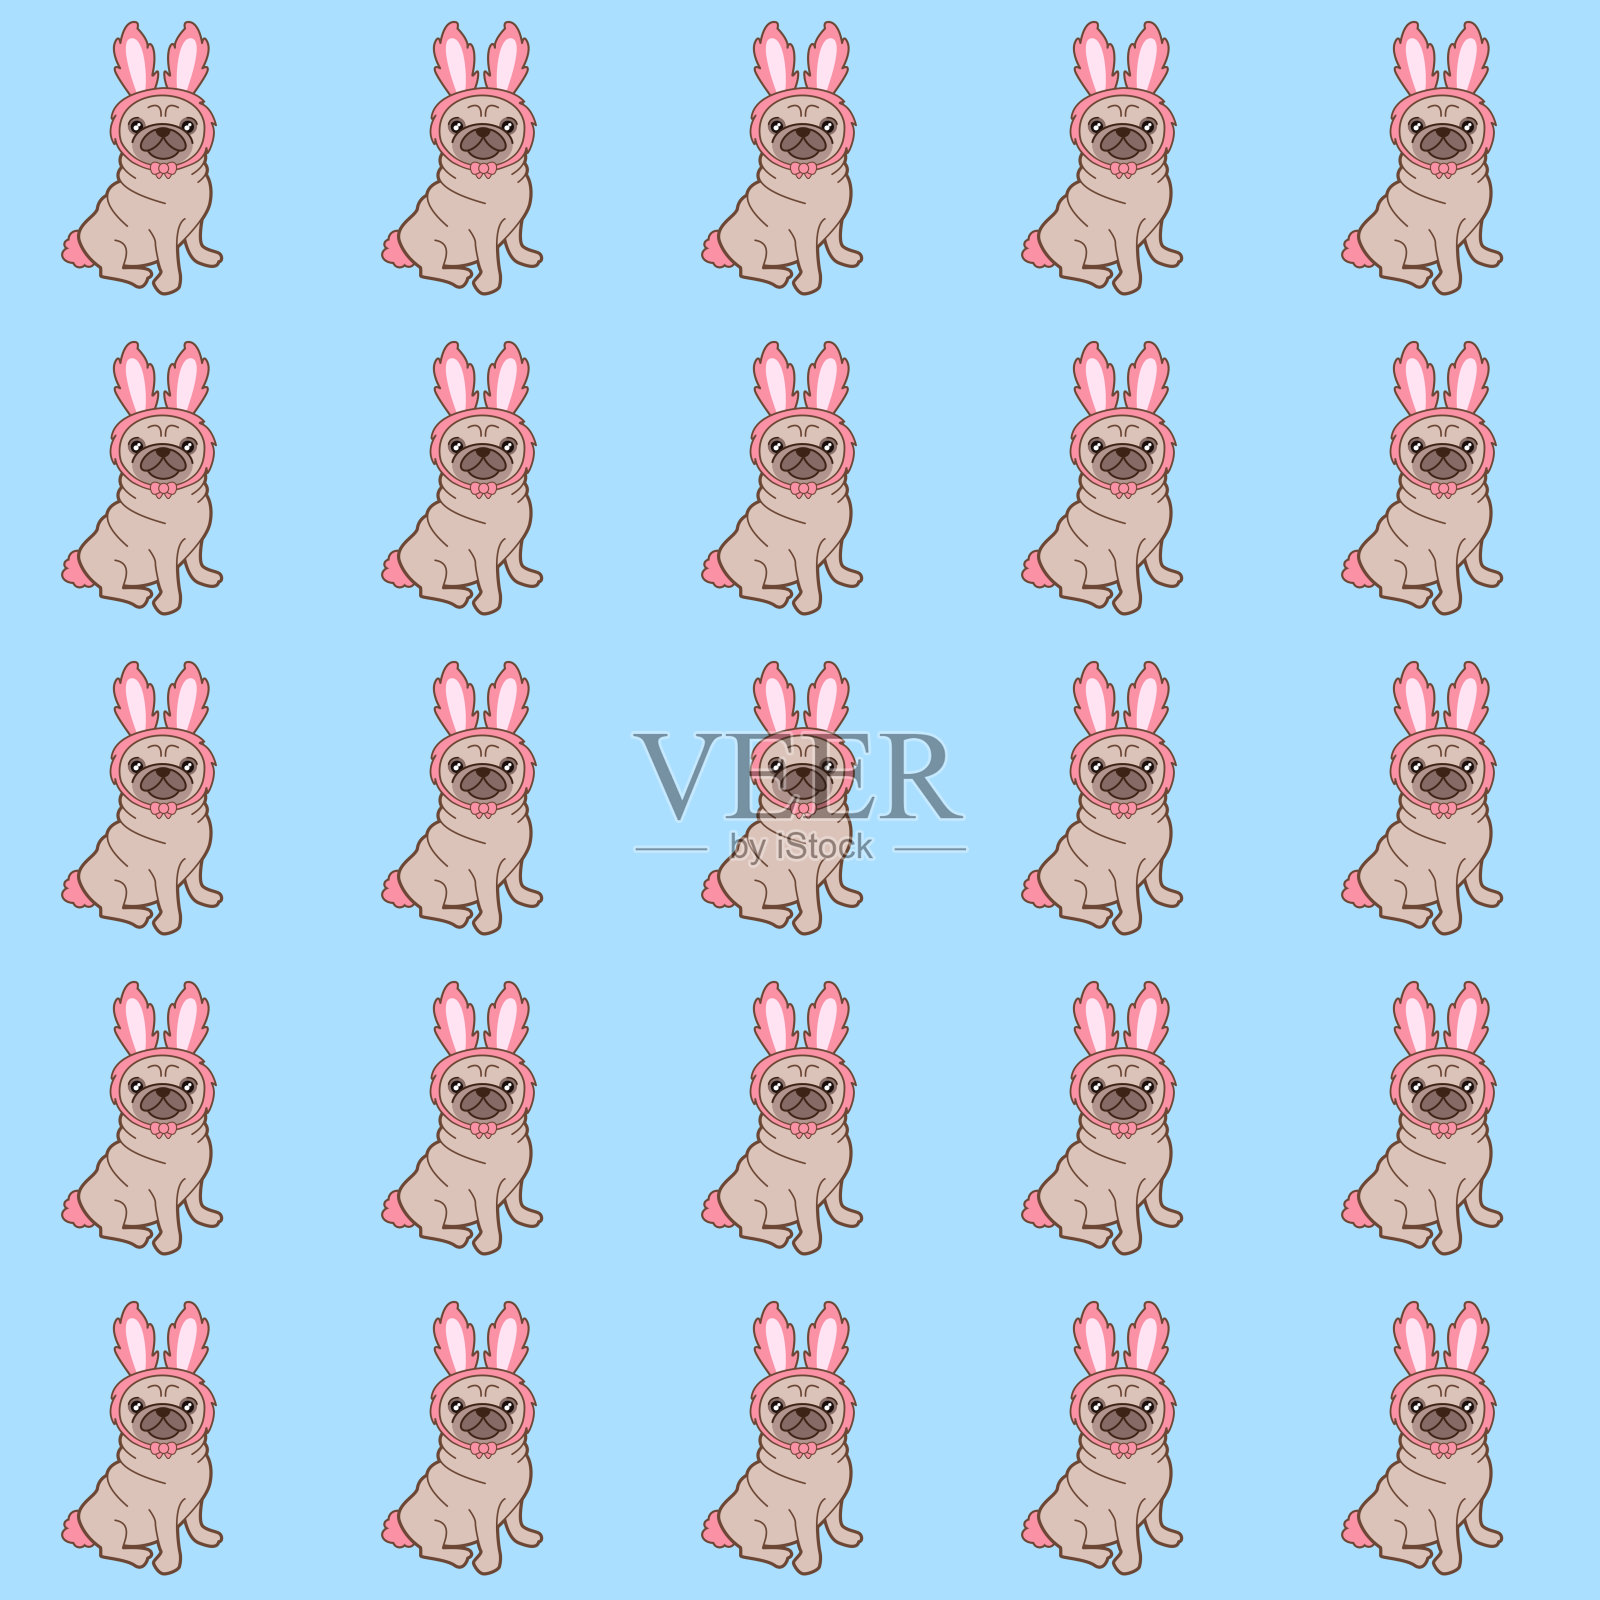 穿着兔子服装的哈巴狗插画图片素材